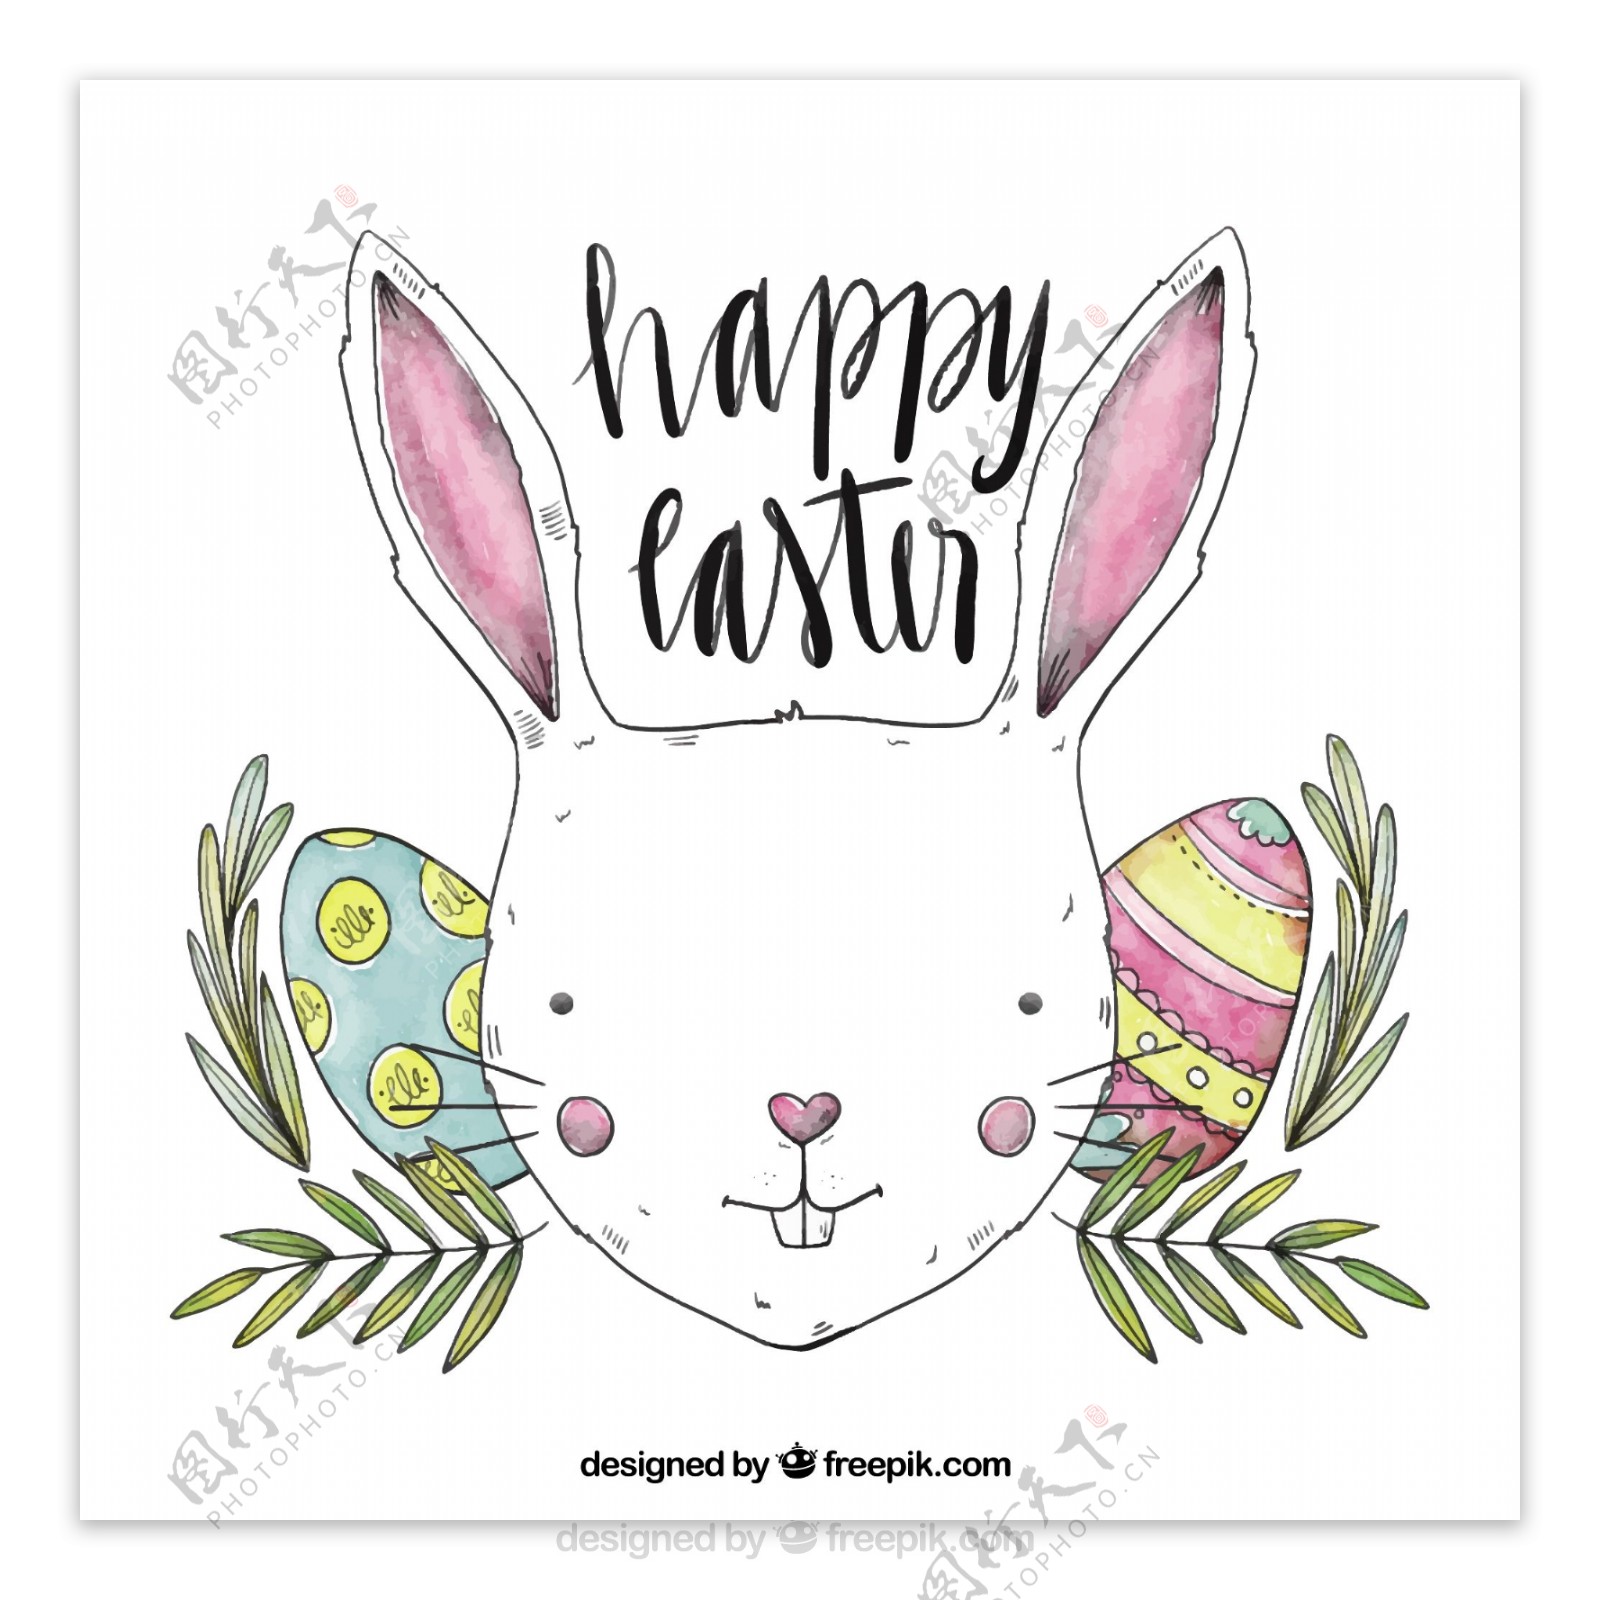 彩绘复活节白兔和彩蛋